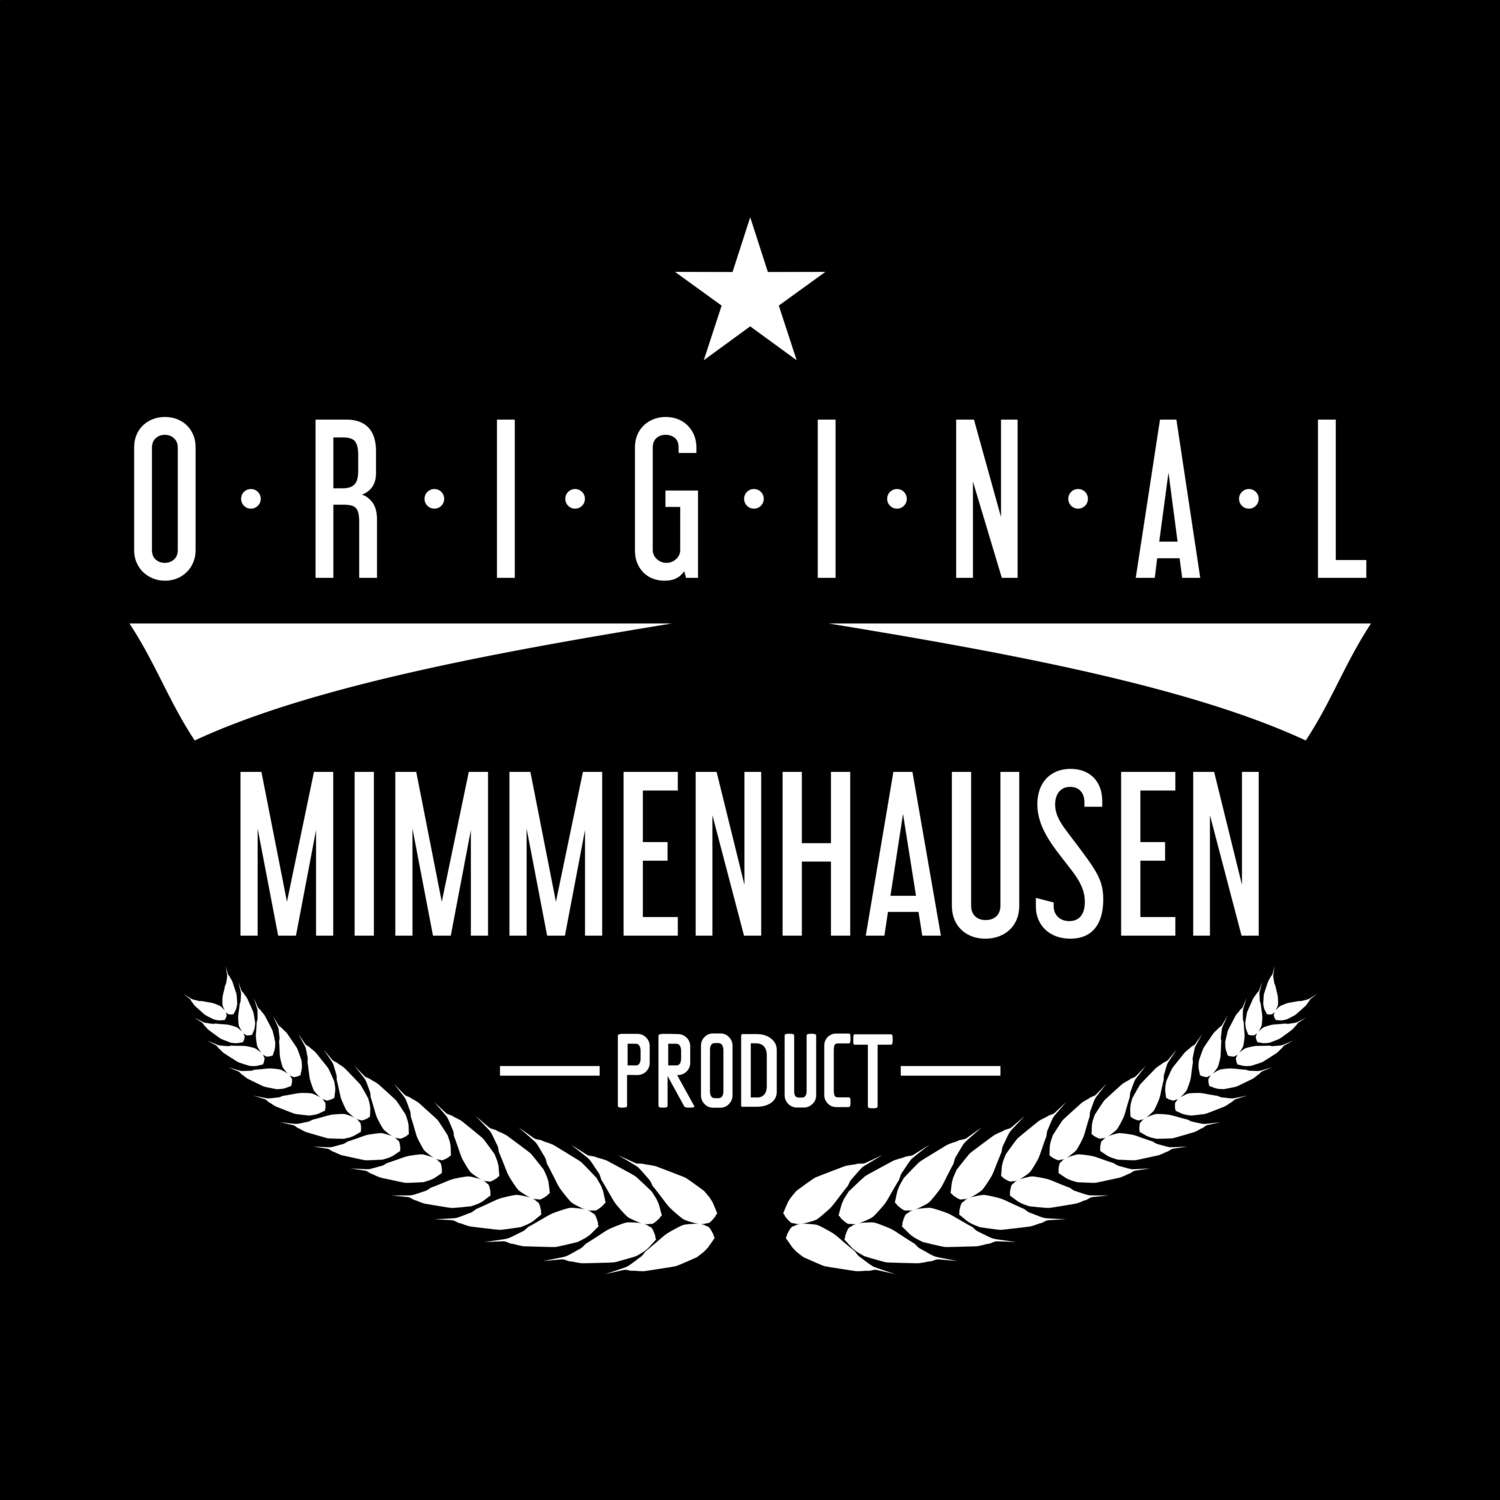 Mimmenhausen T-Shirt »Original Product«